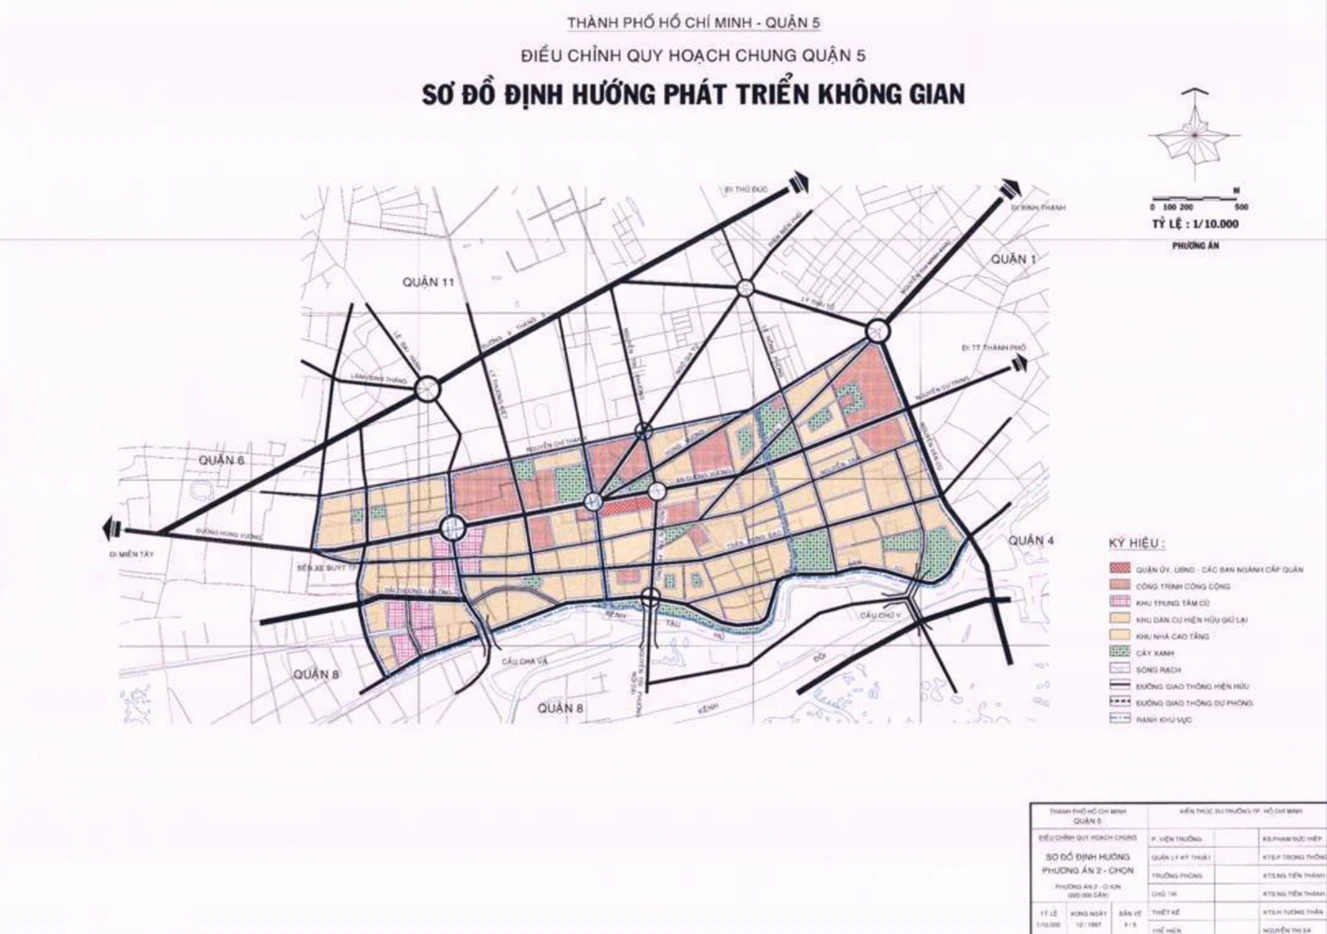 Xem bản đồ quy hoạch sử dụng đất quận 5 TP HCM năm 2024 để tìm hiểu về các kế hoạch phát triển và sử dụng đất trong tương lai, với những dự án mới được triển khai, giúp tăng cường kinh tế và cải thiện chất lượng cuộc sống của người dân.